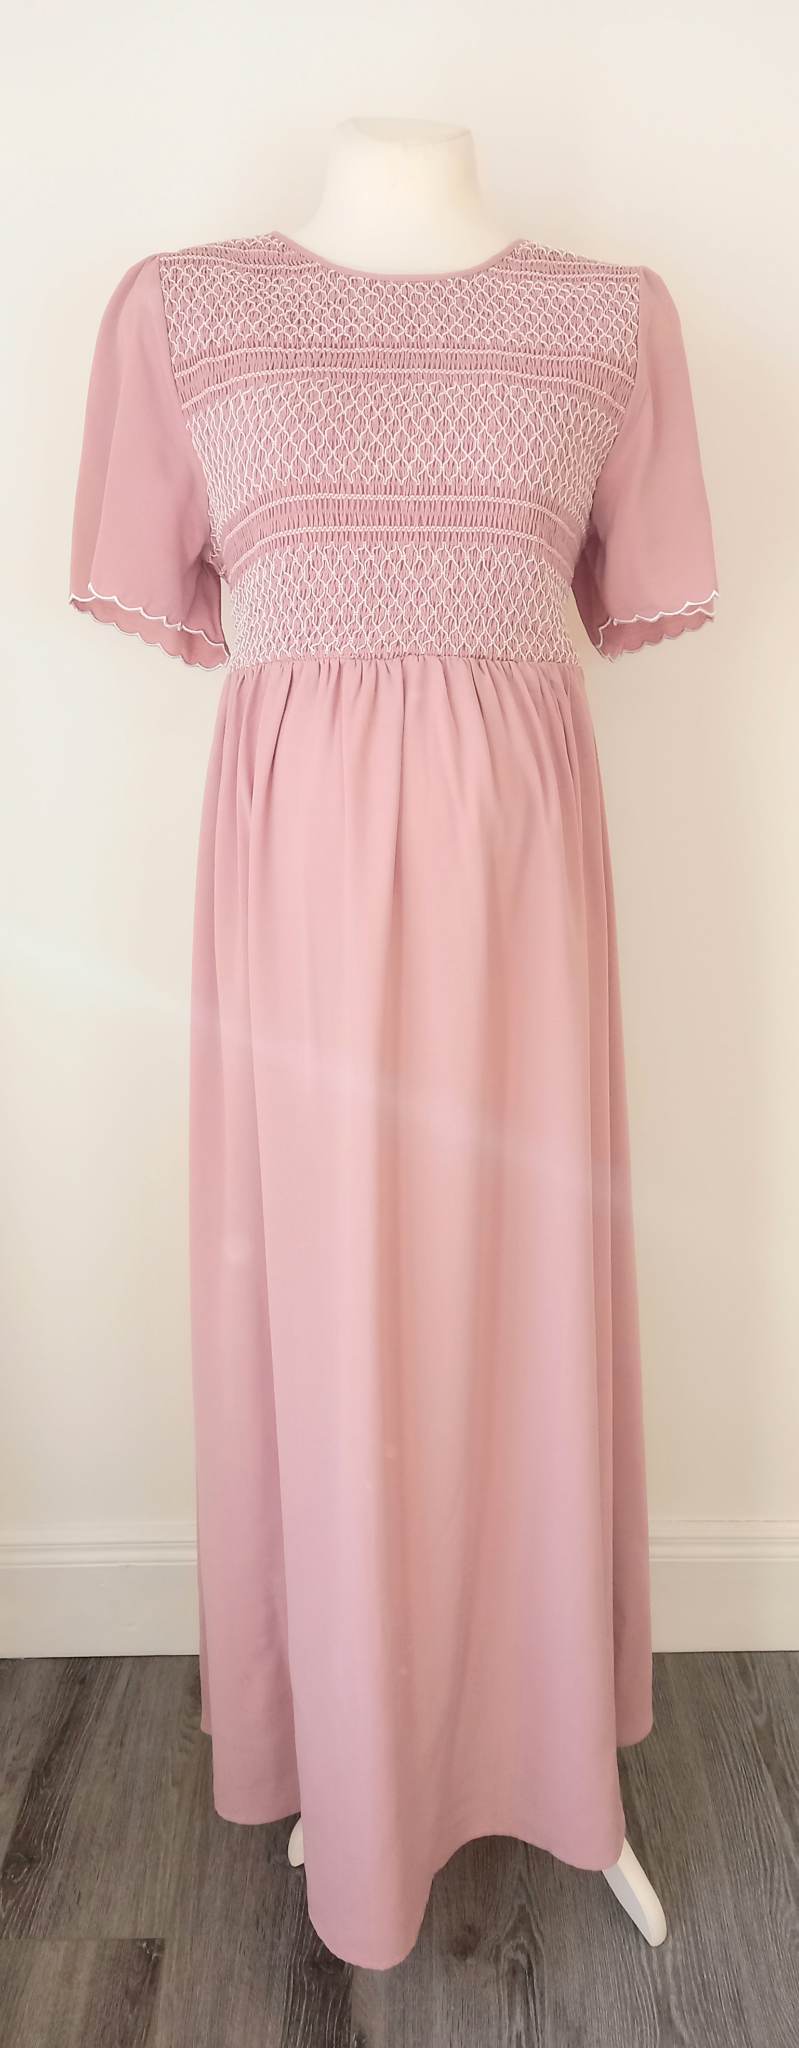 Shein Dusky Pink Maxi Dress - Size XXL (Approx UK 14/16)